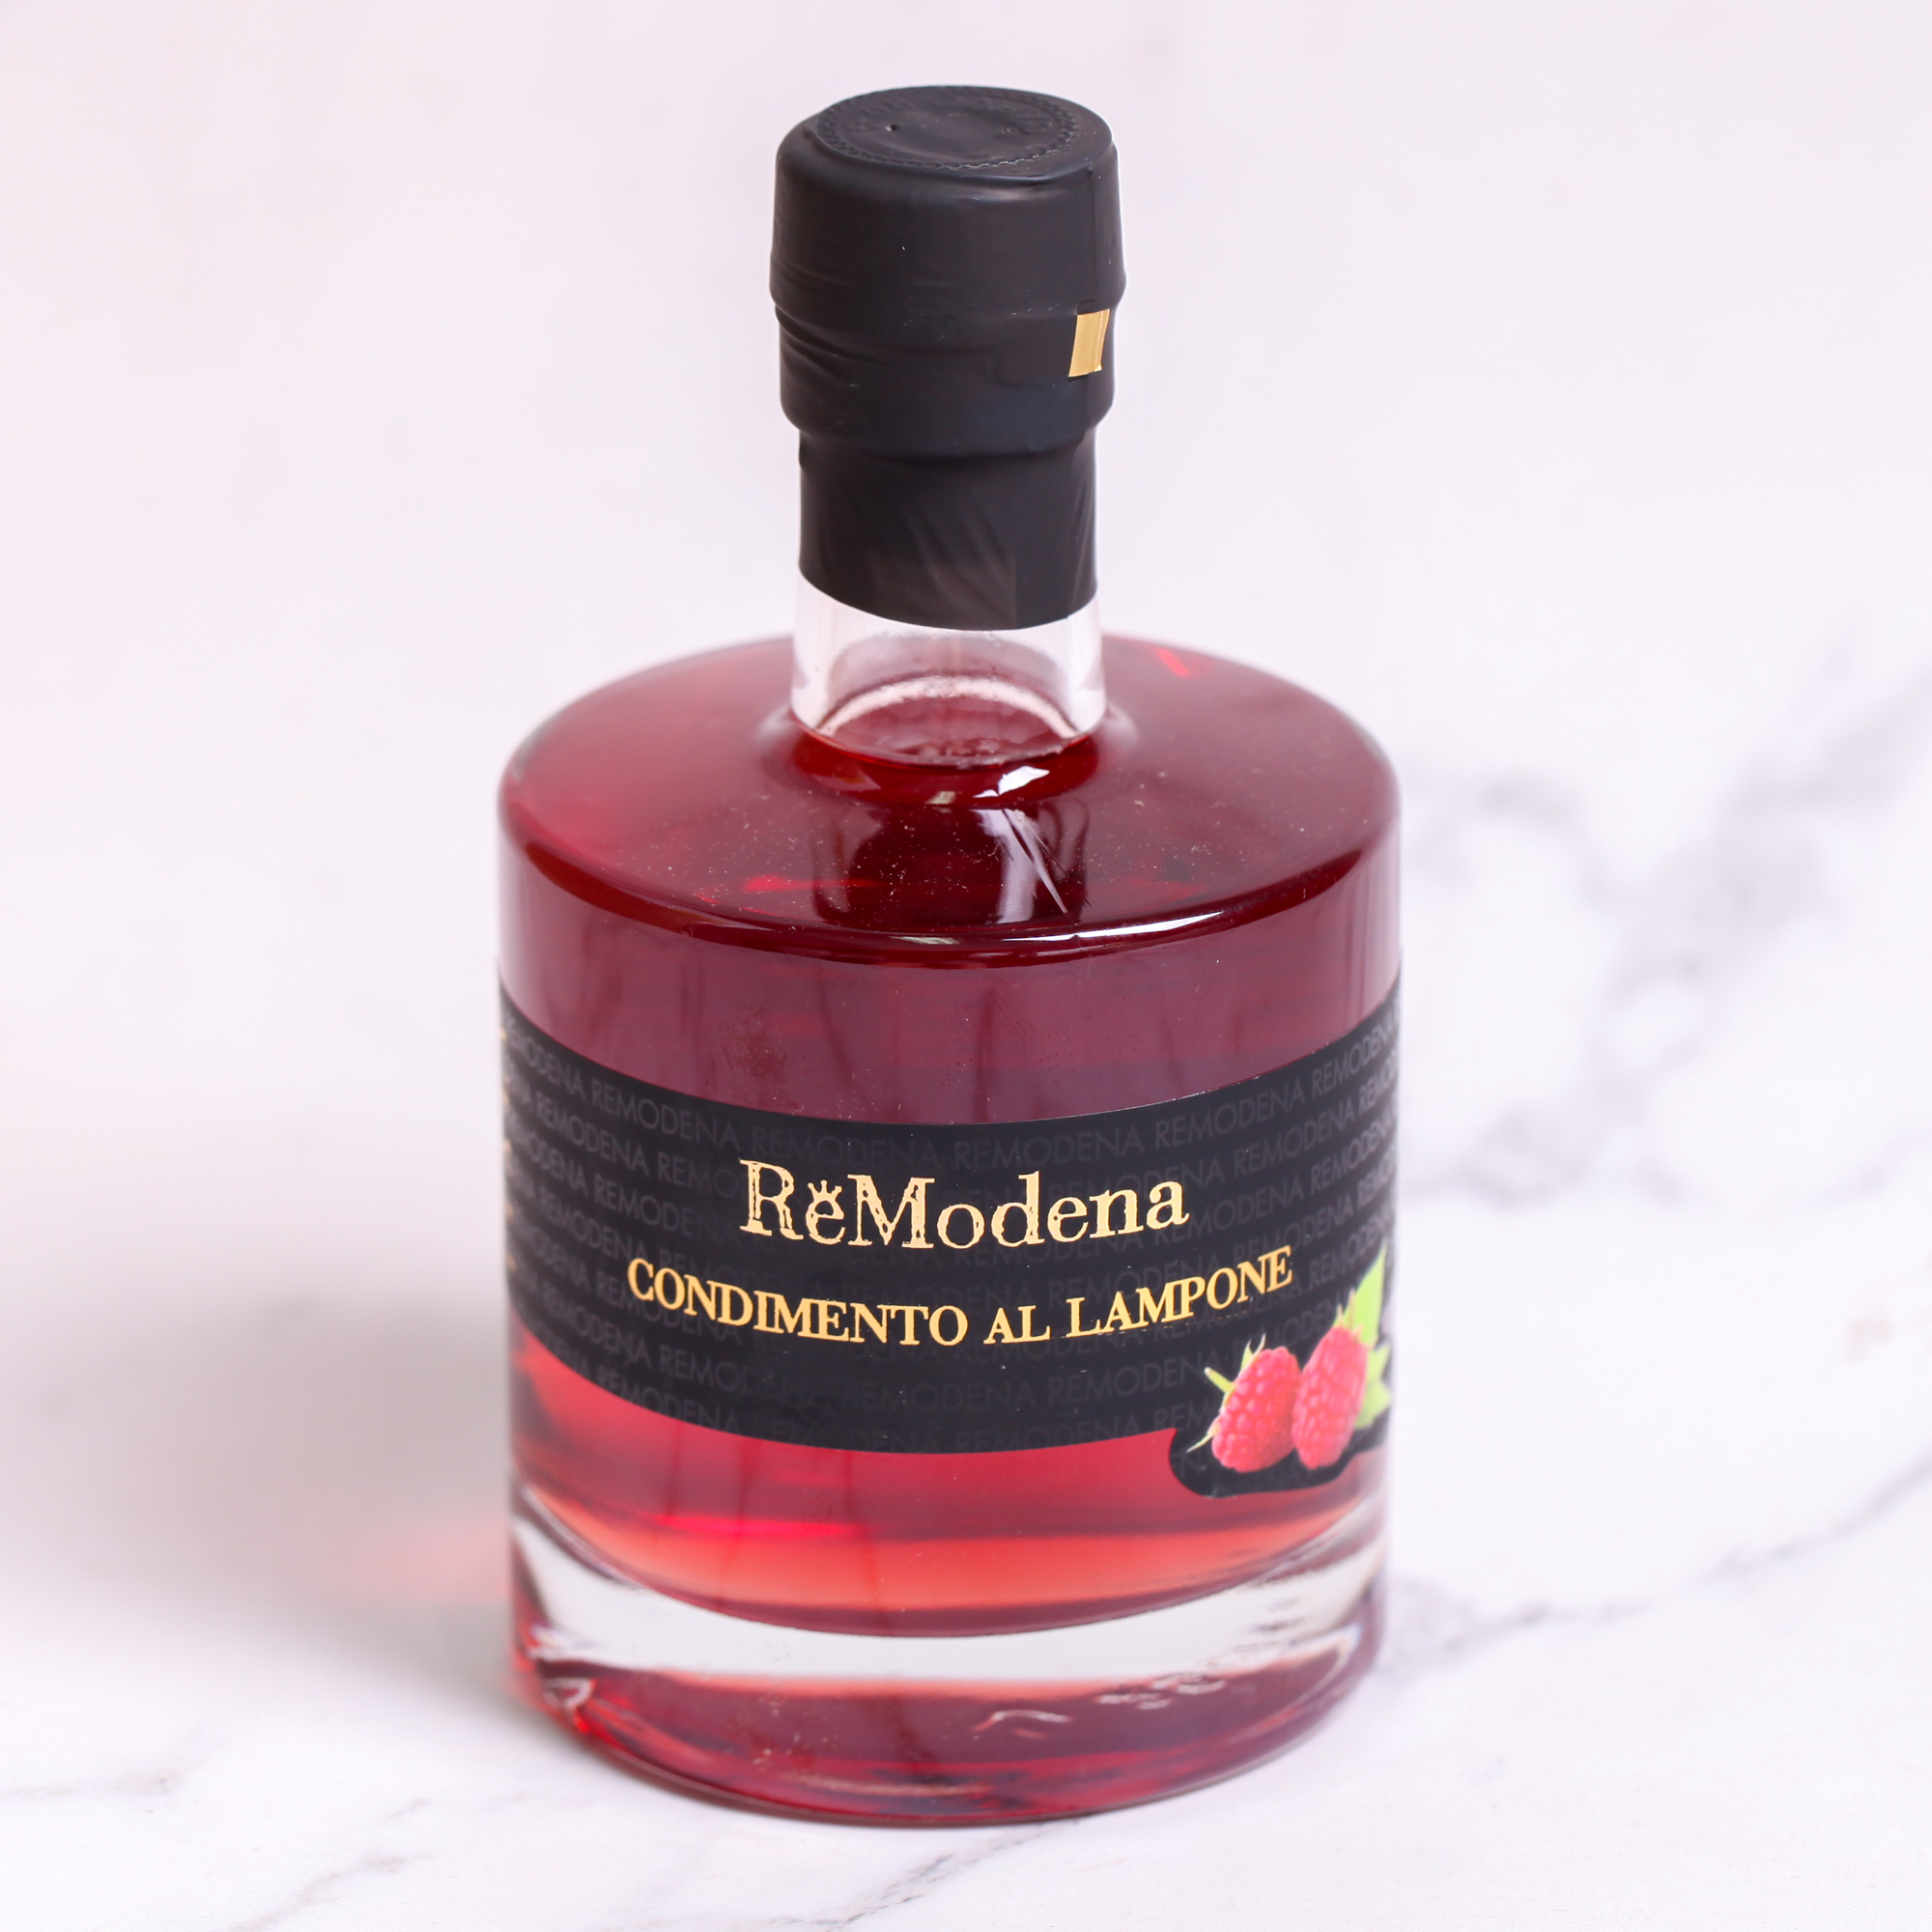 Raspberry Balsamic Vinegar of Modena PGI